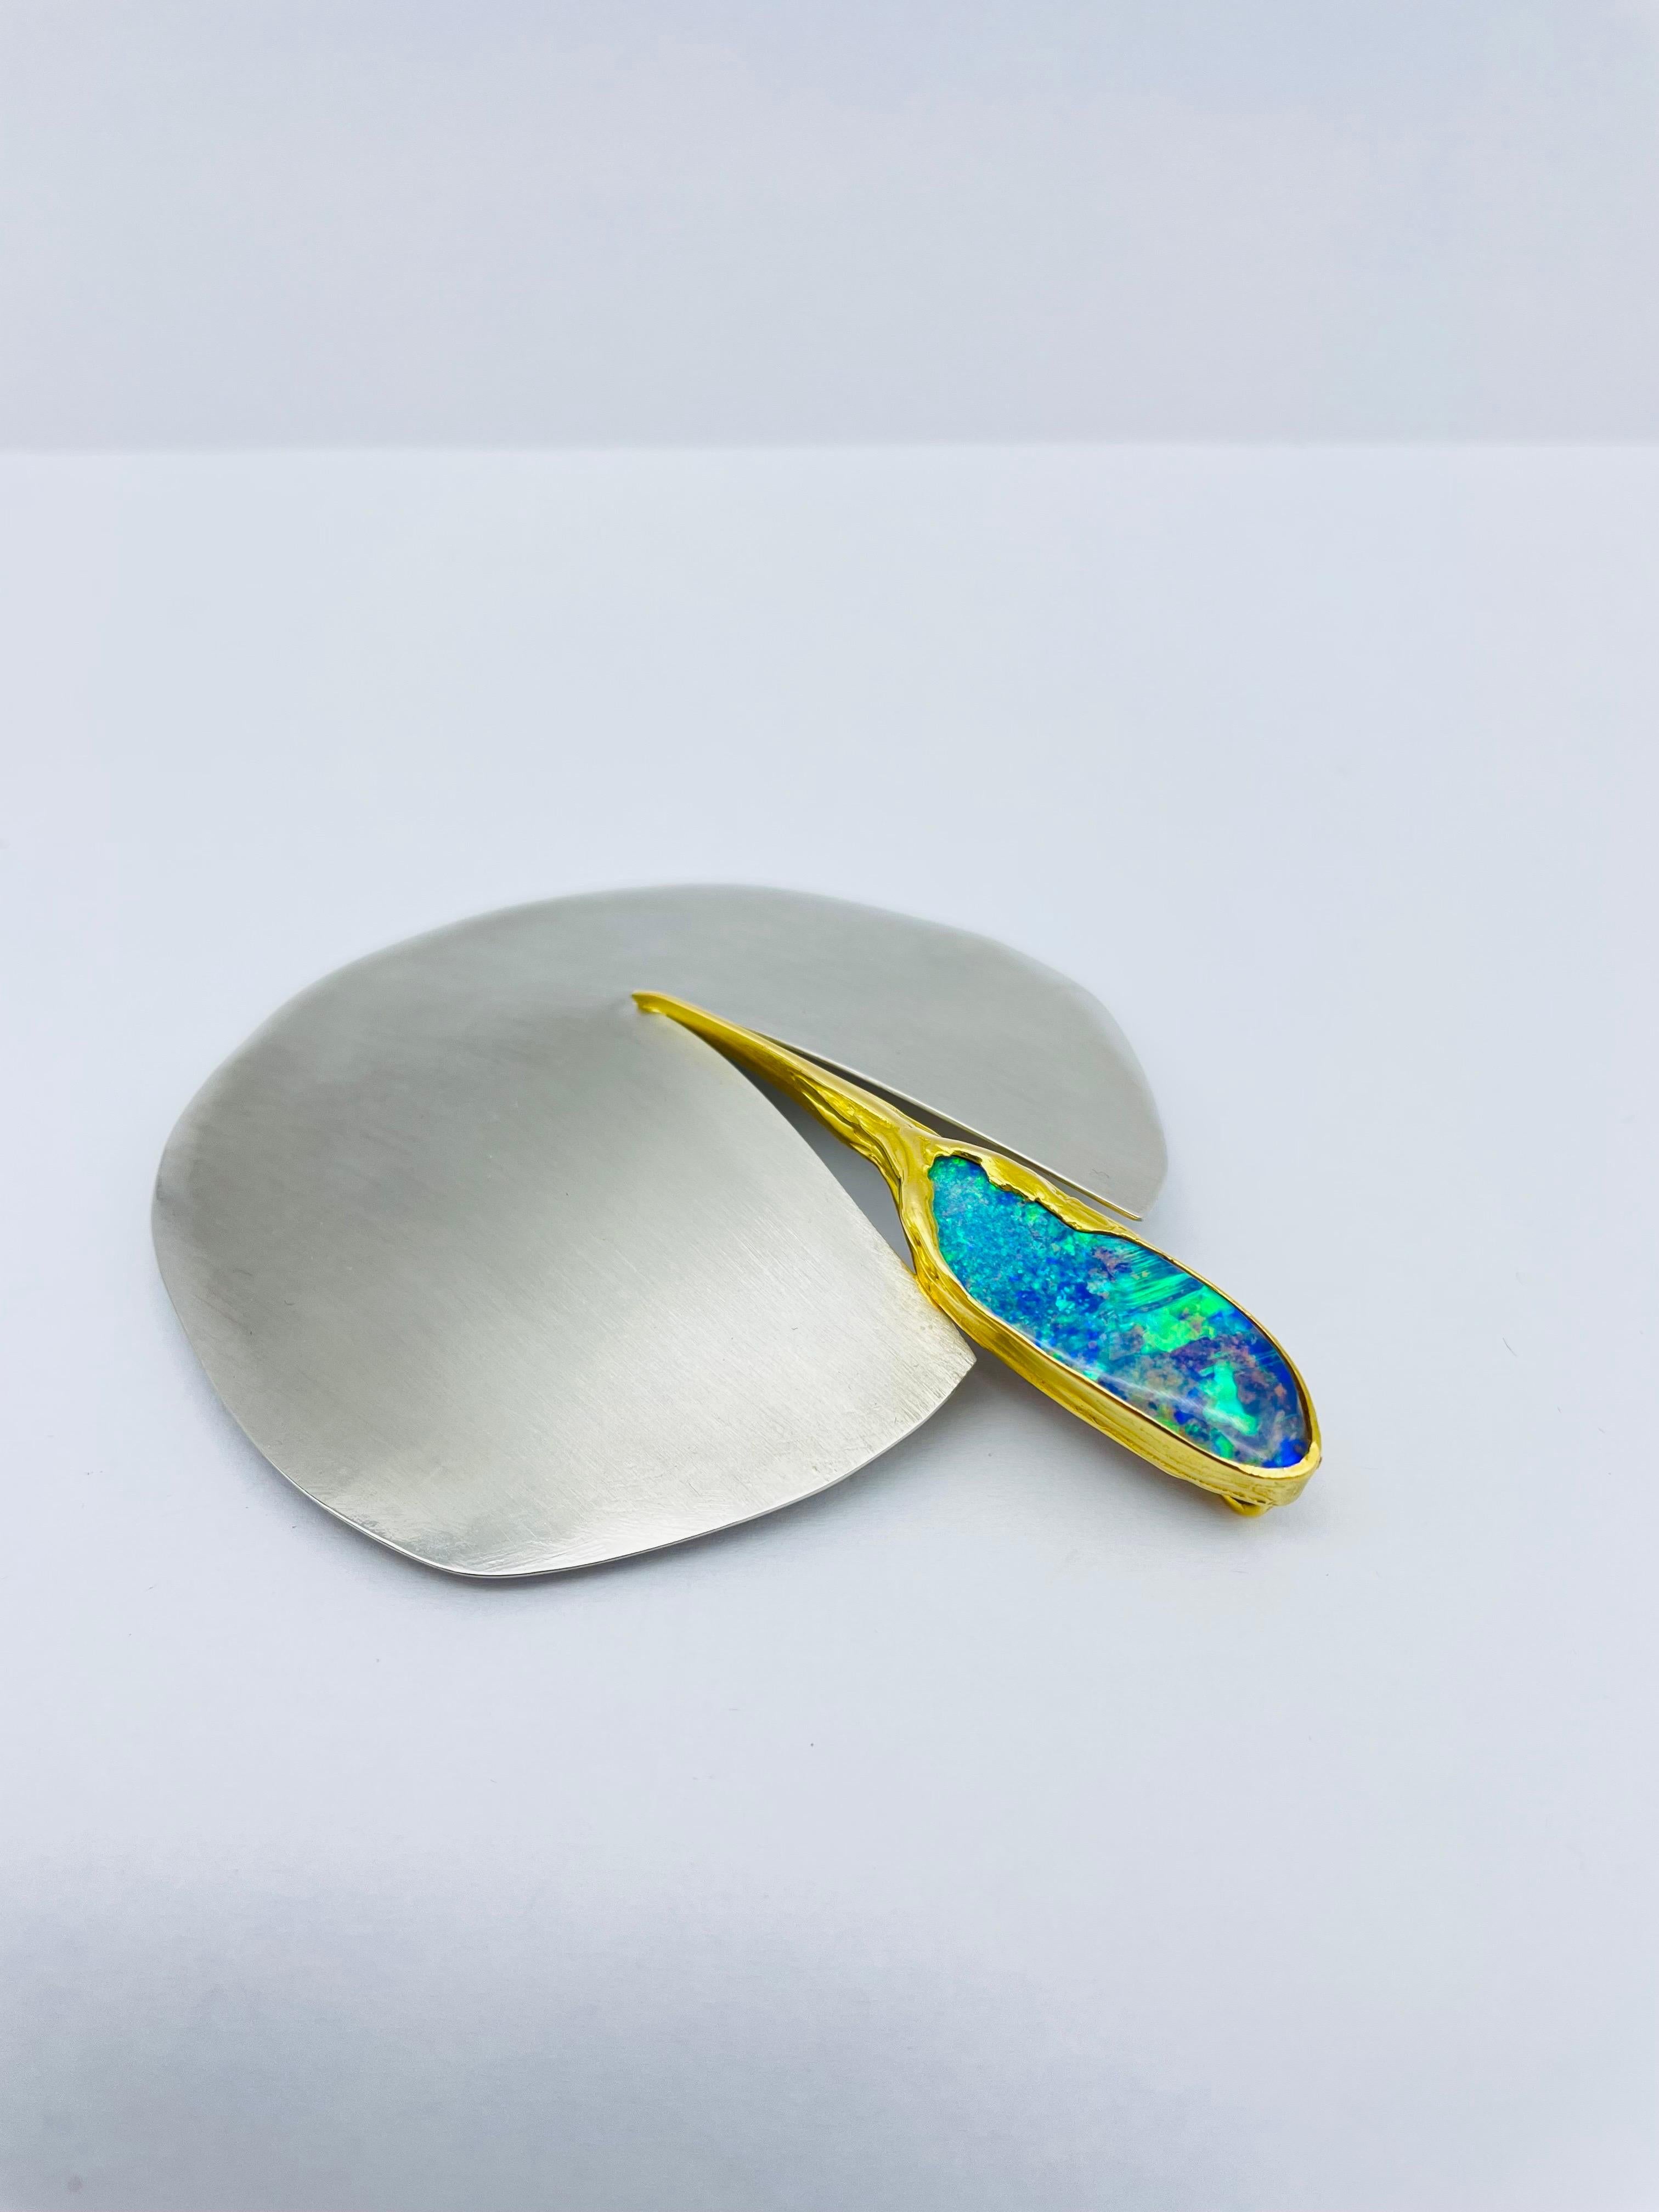 Women's or Men's Bicolor Platinum/18k Gold Brooch-Pendant with Australian Opal, Unique For Sale